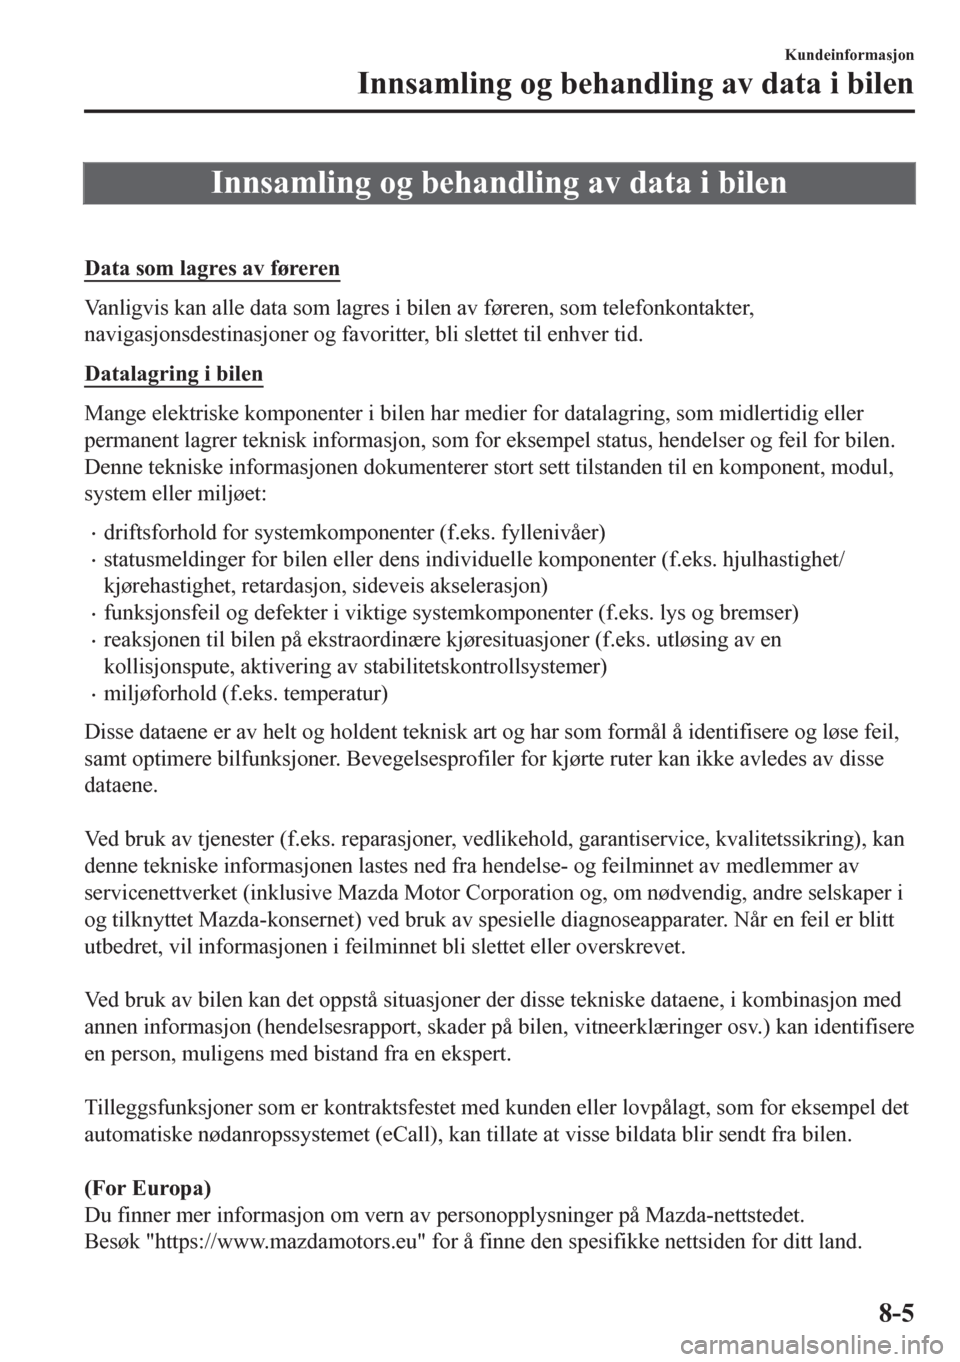 MAZDA MODEL CX-5 2018  Brukerhåndbok (in Norwegian) Innsamling og behandling av data i bilen
 
Data som lagres av føreren
Vanligvis kan alle data som lagres i bilen av føreren, som telefonkontakter,
navigasjonsdestinasjoner og favoritter, bli slettet